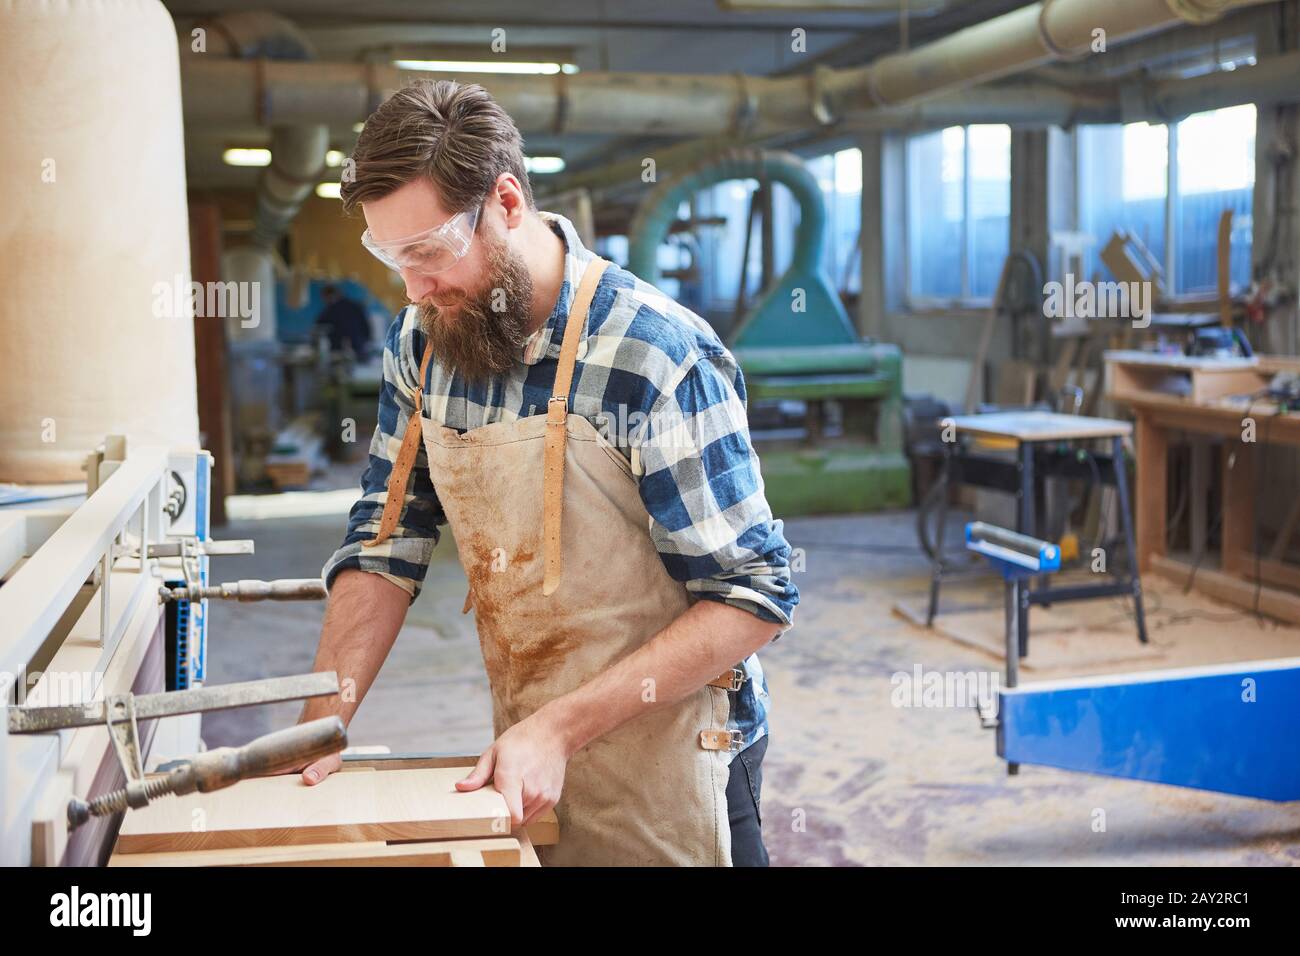 Falegname tirocinante nella levigatura del legno per la costruzione di mobili nella carpenteria Foto Stock